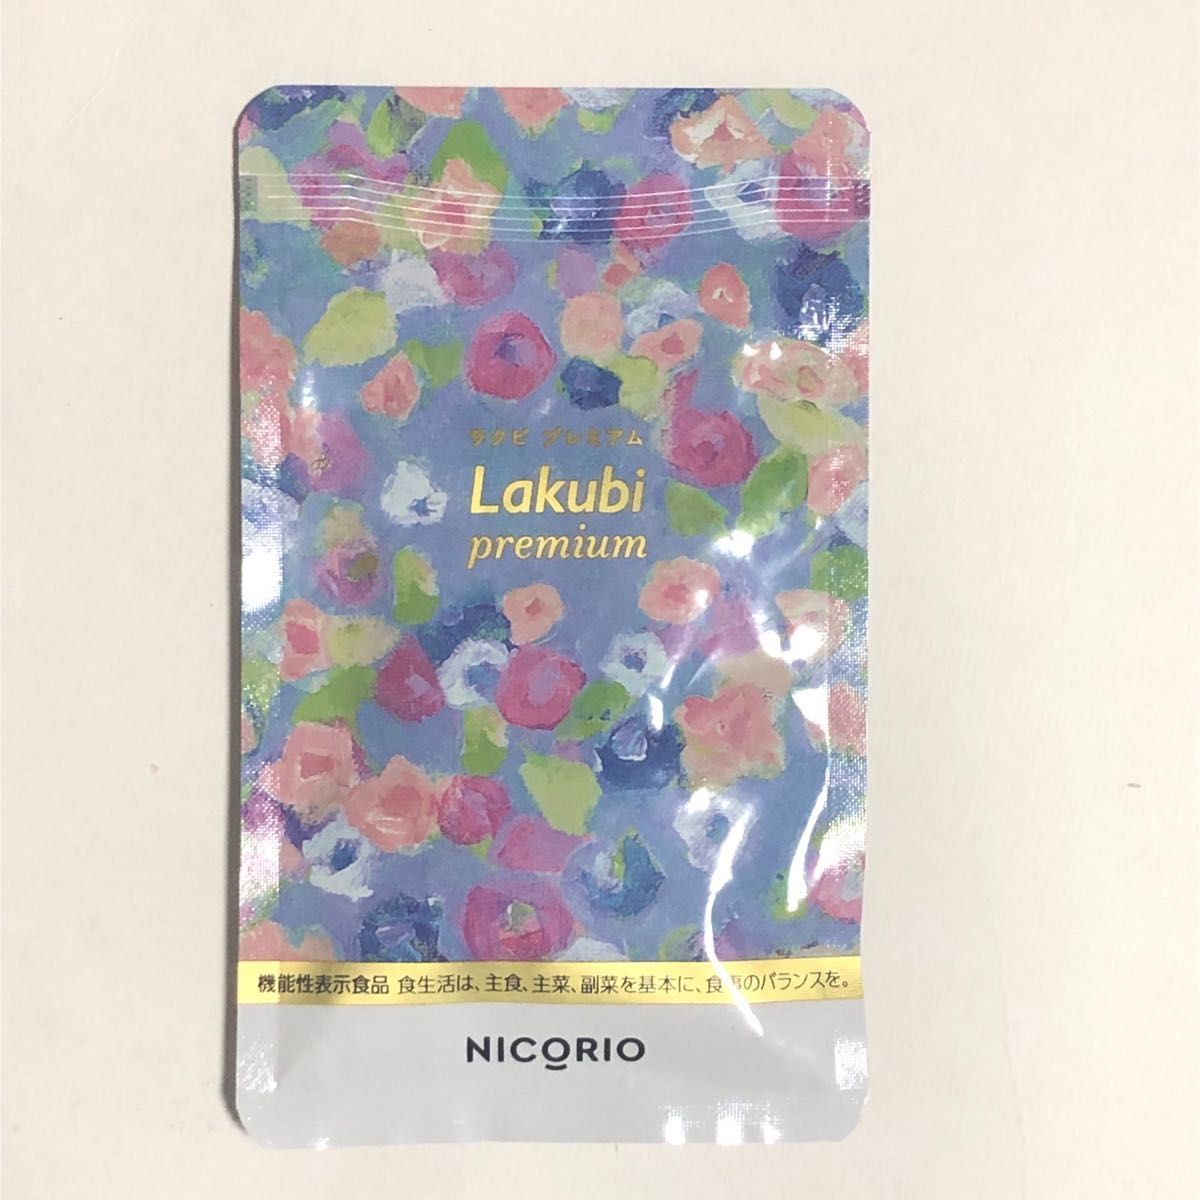 ニコリオ NICORIO○ラクビプレミアム~Lakubi premium~ 